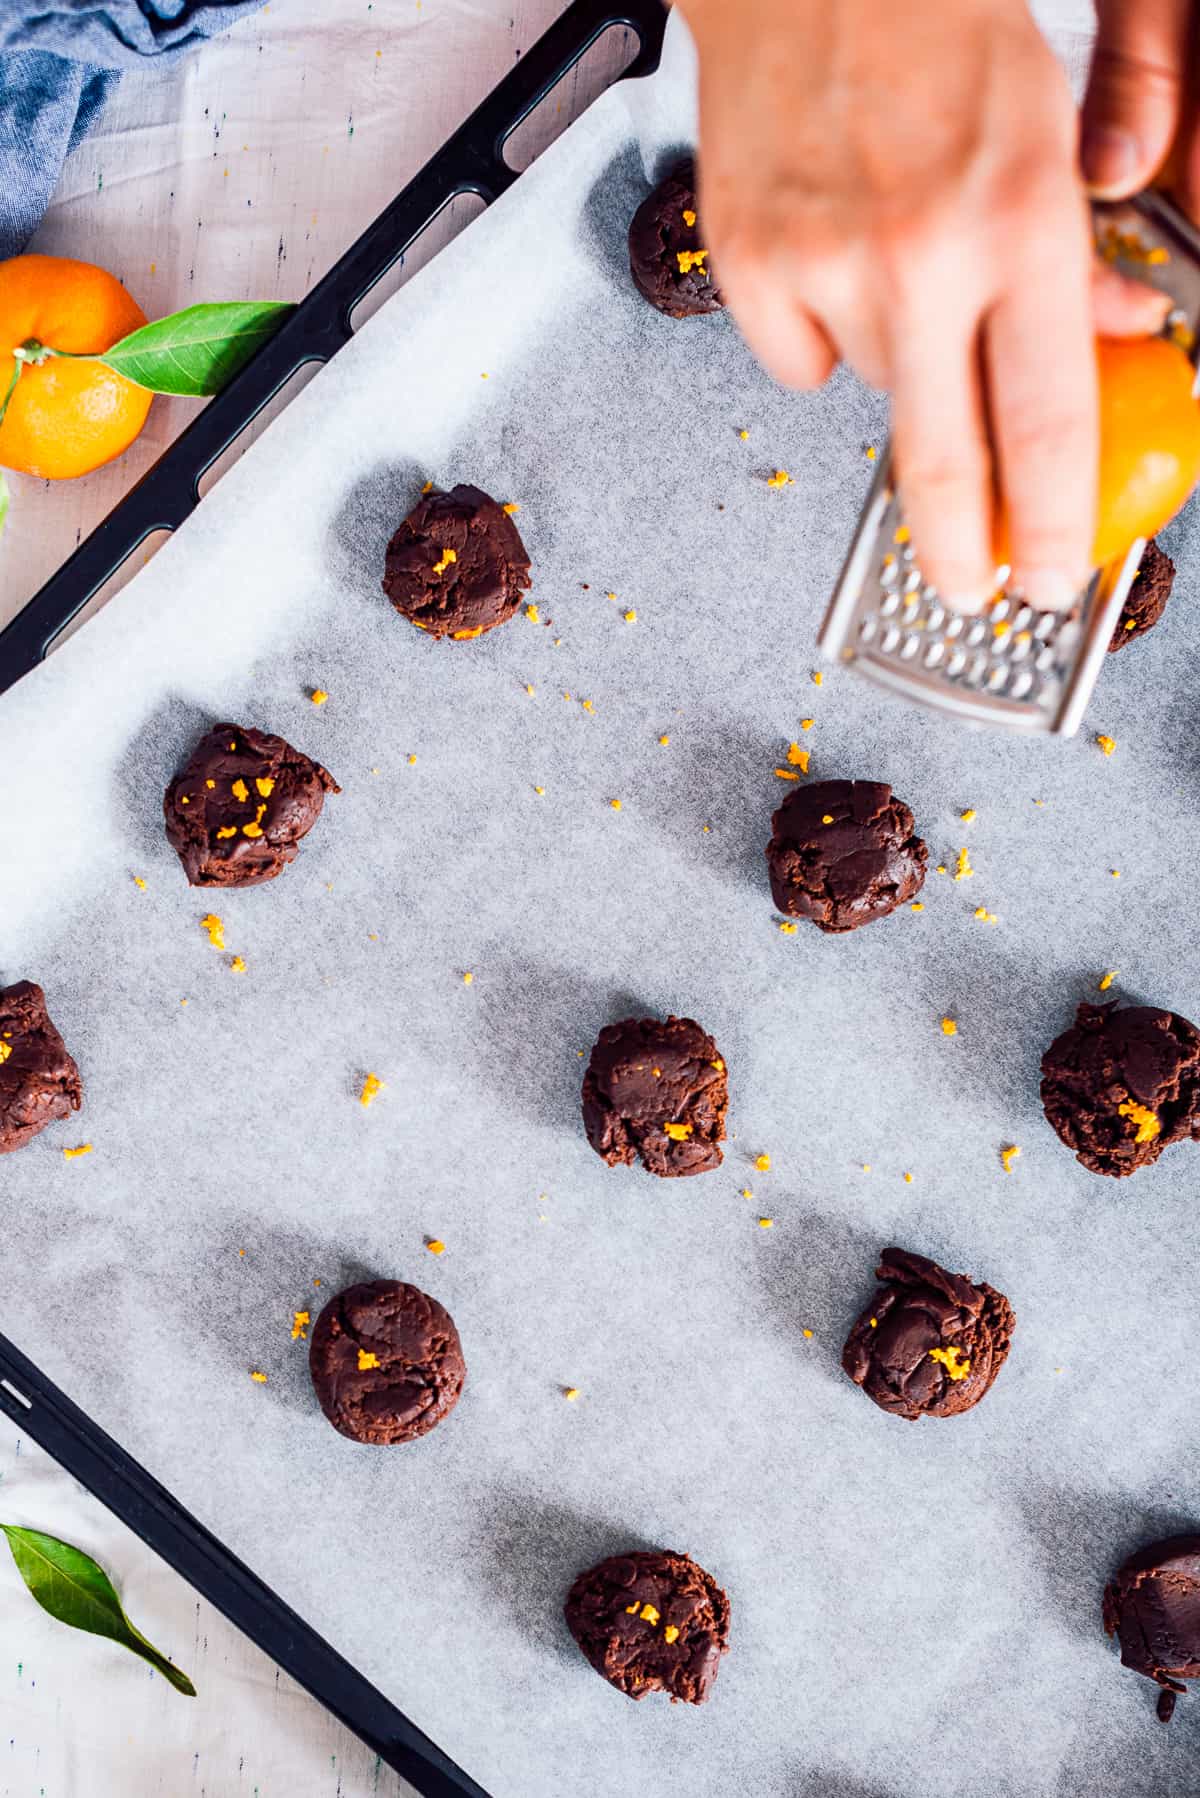 Hands grating orange zest over chocolate cookie dough balls.